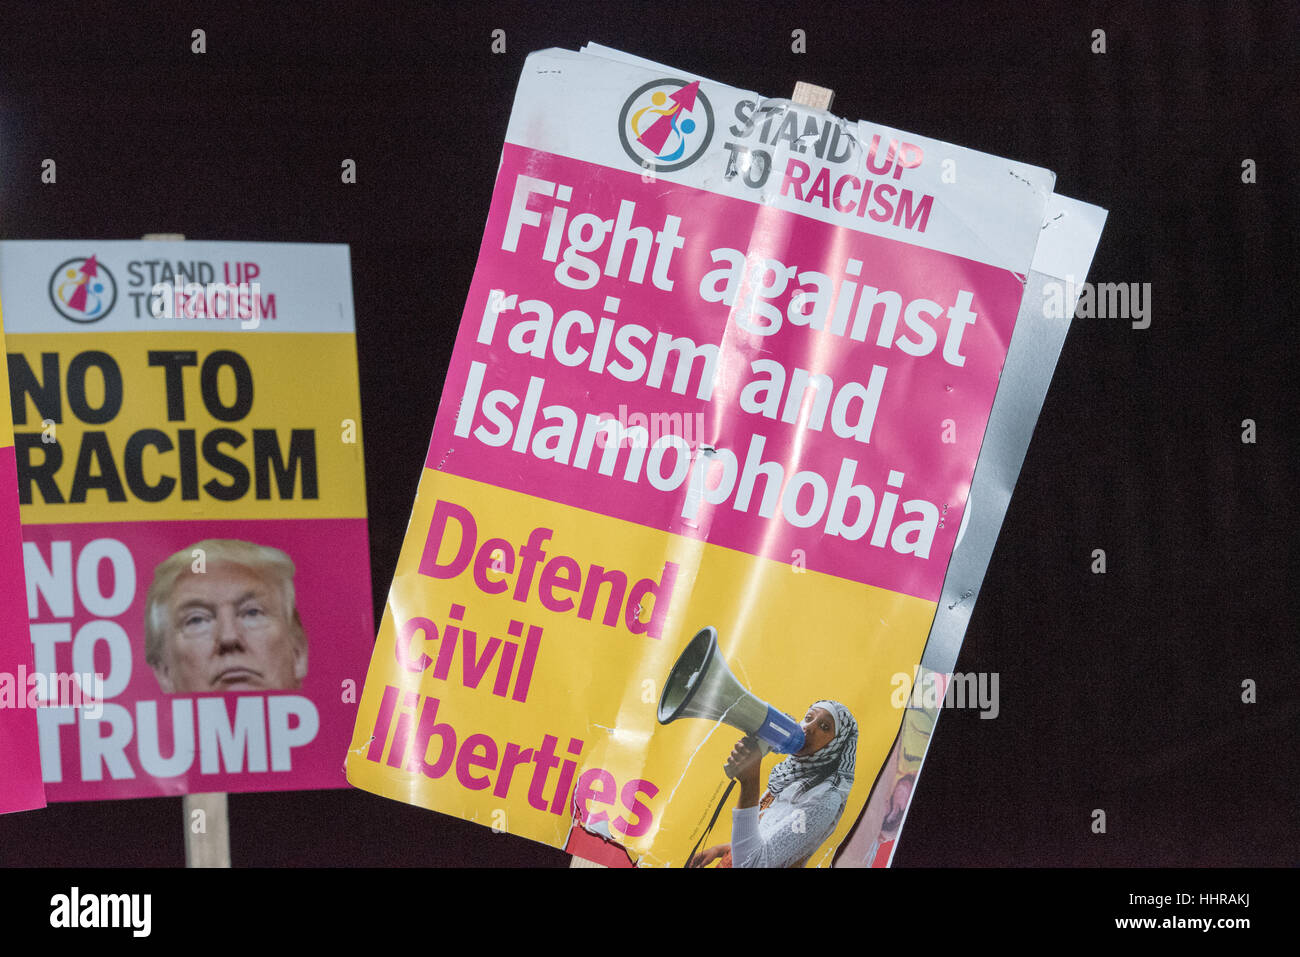 Londres, Royaume-Uni. Le 20 janvier, 2017. Des banderoles et des panneaux à l'Atout anti-manifestation et une marche devant l'ambassade américaine à Londres. Crédit : Ian Davidson/Alamy Live News Banque D'Images